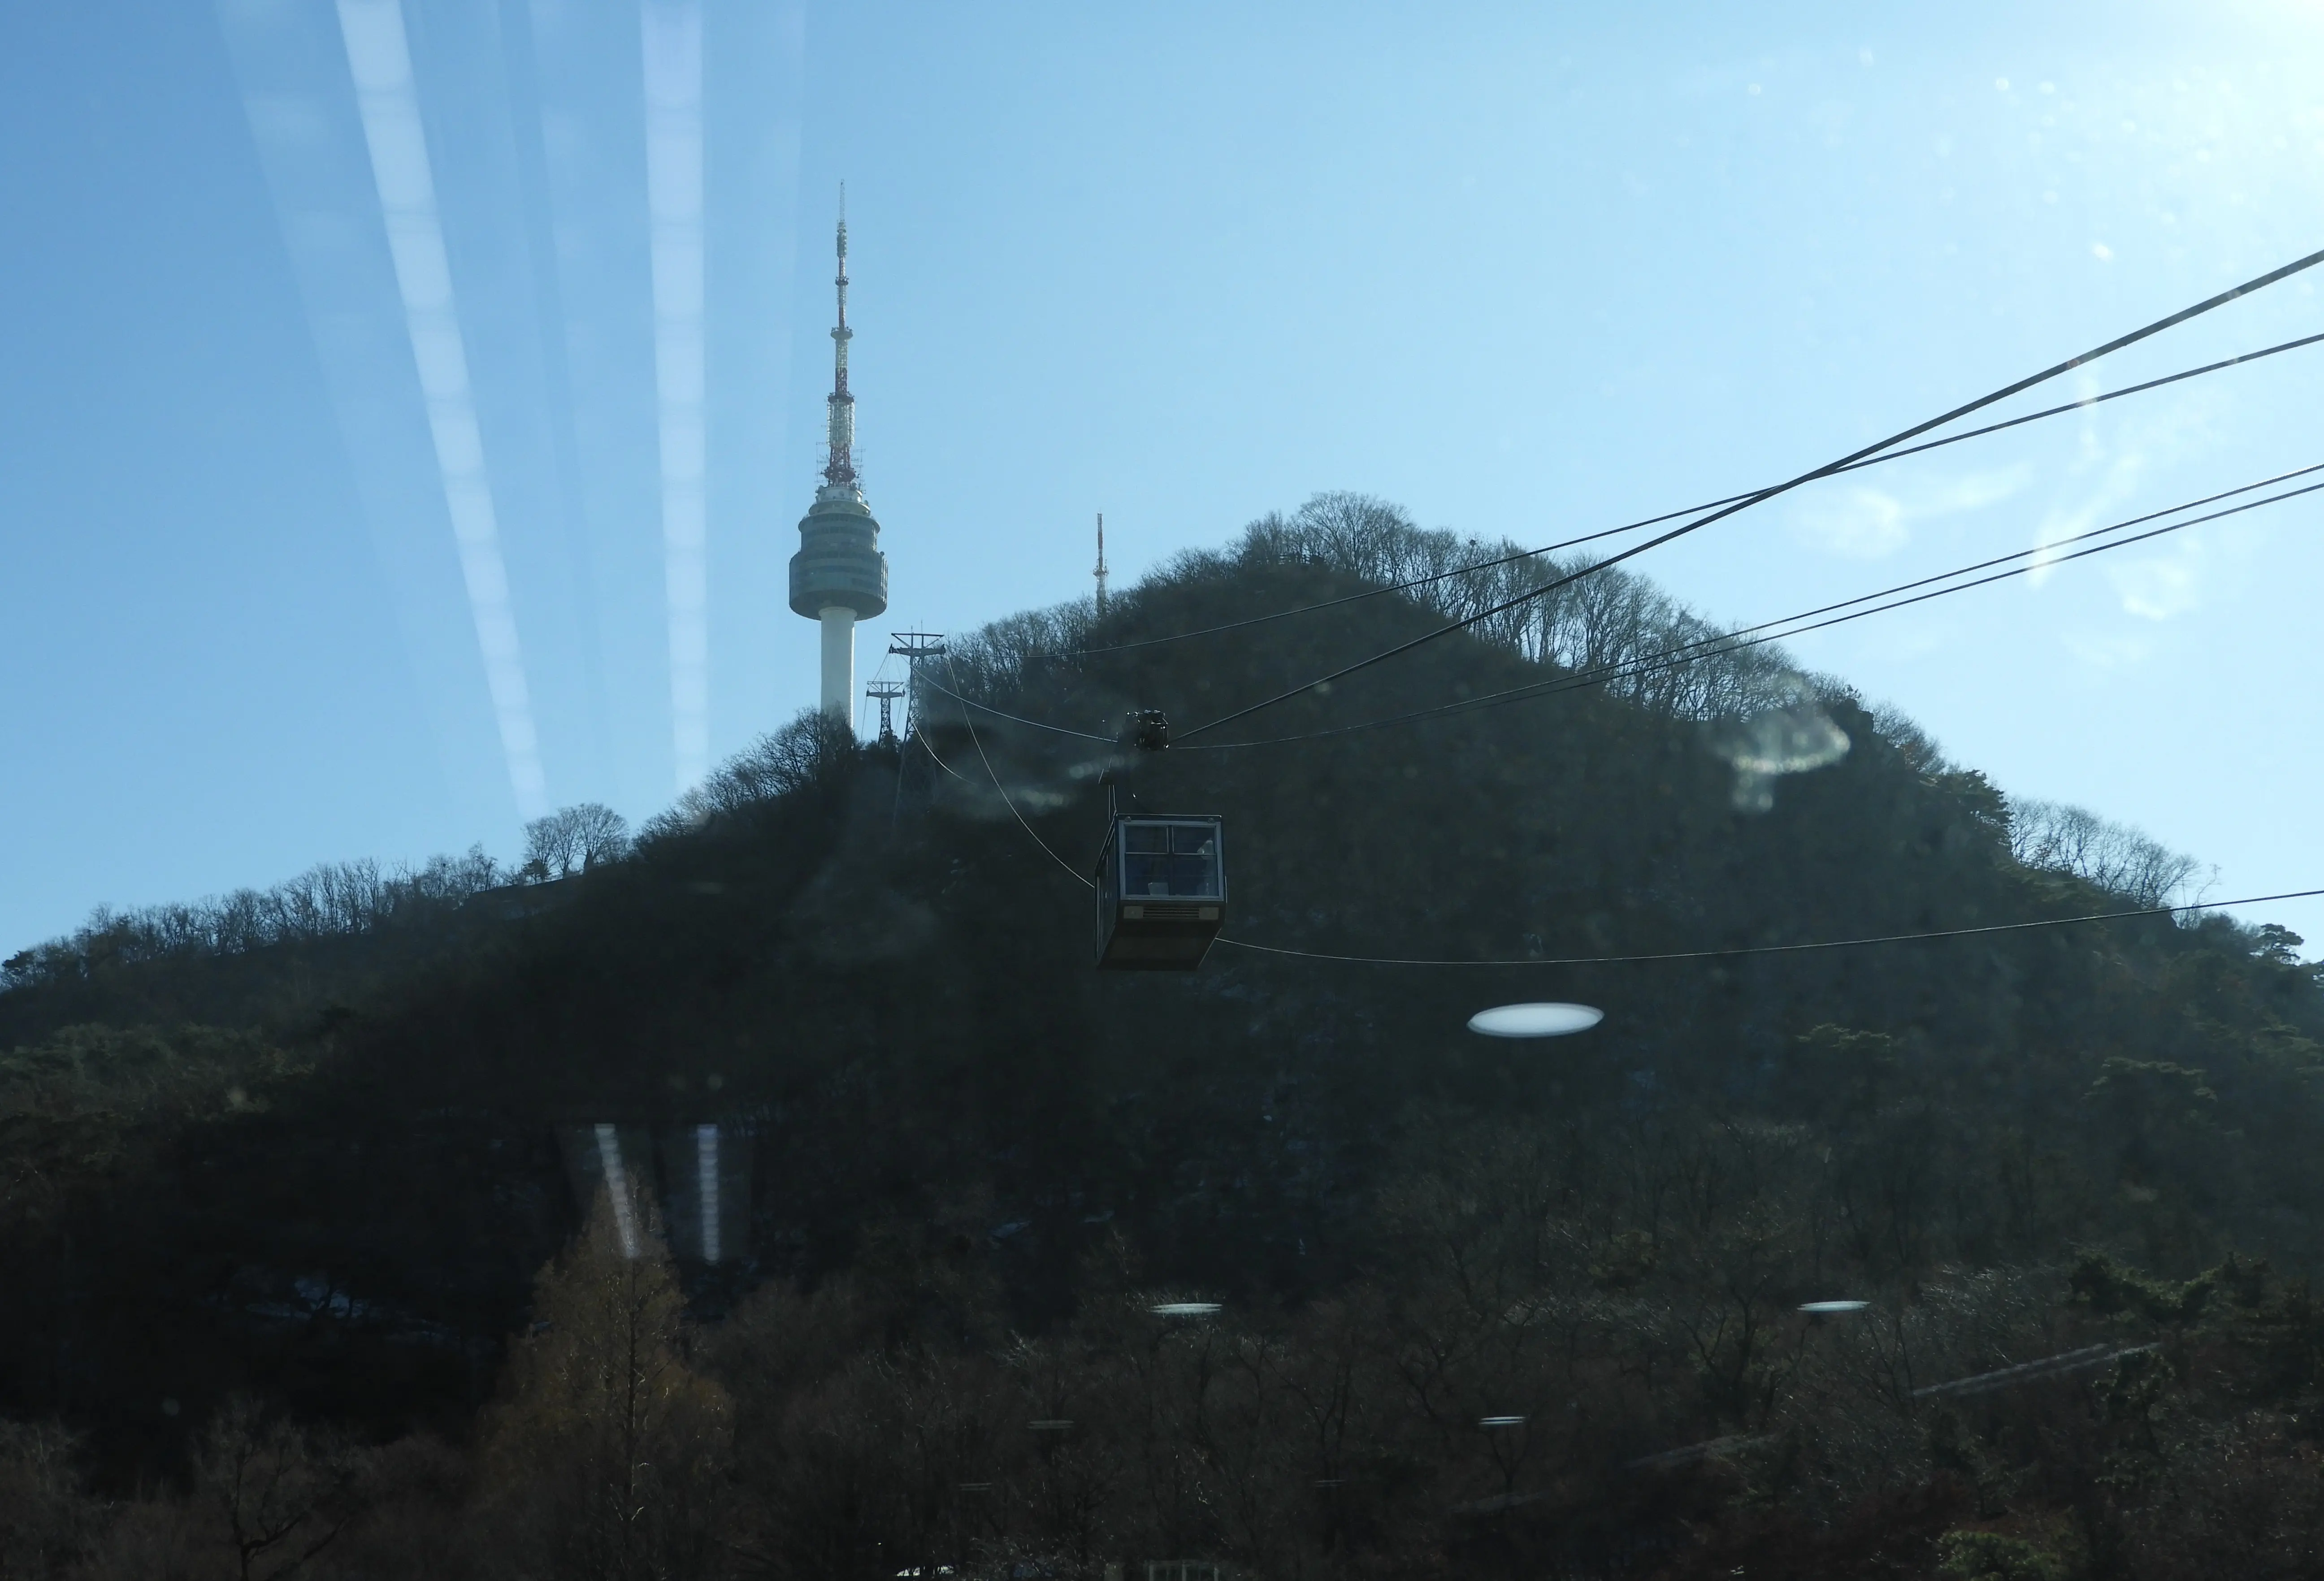 Pemandangan dari cable car menuju Namsan Tower, Seoul, Jumat (12/1/2018). (Liputan6.com/Hotnida Novita Sary)